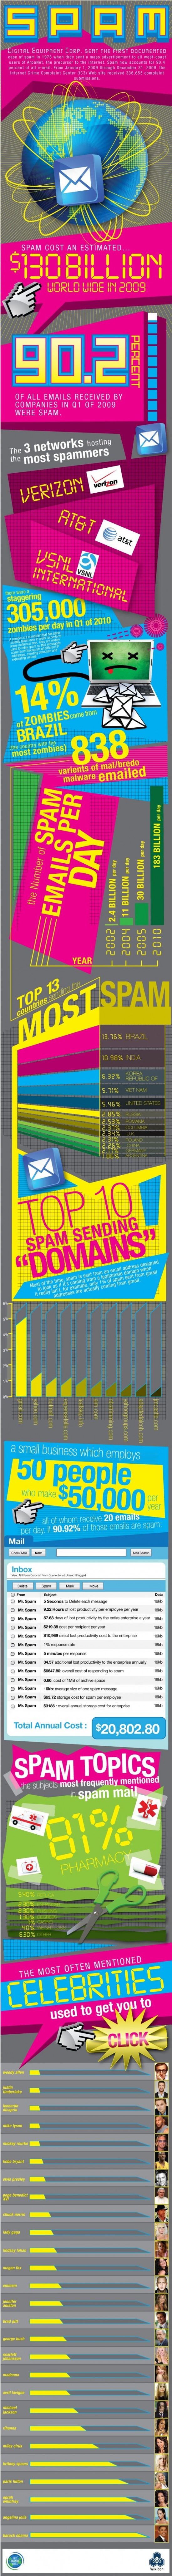 La historia del Spam [Infografía] 1